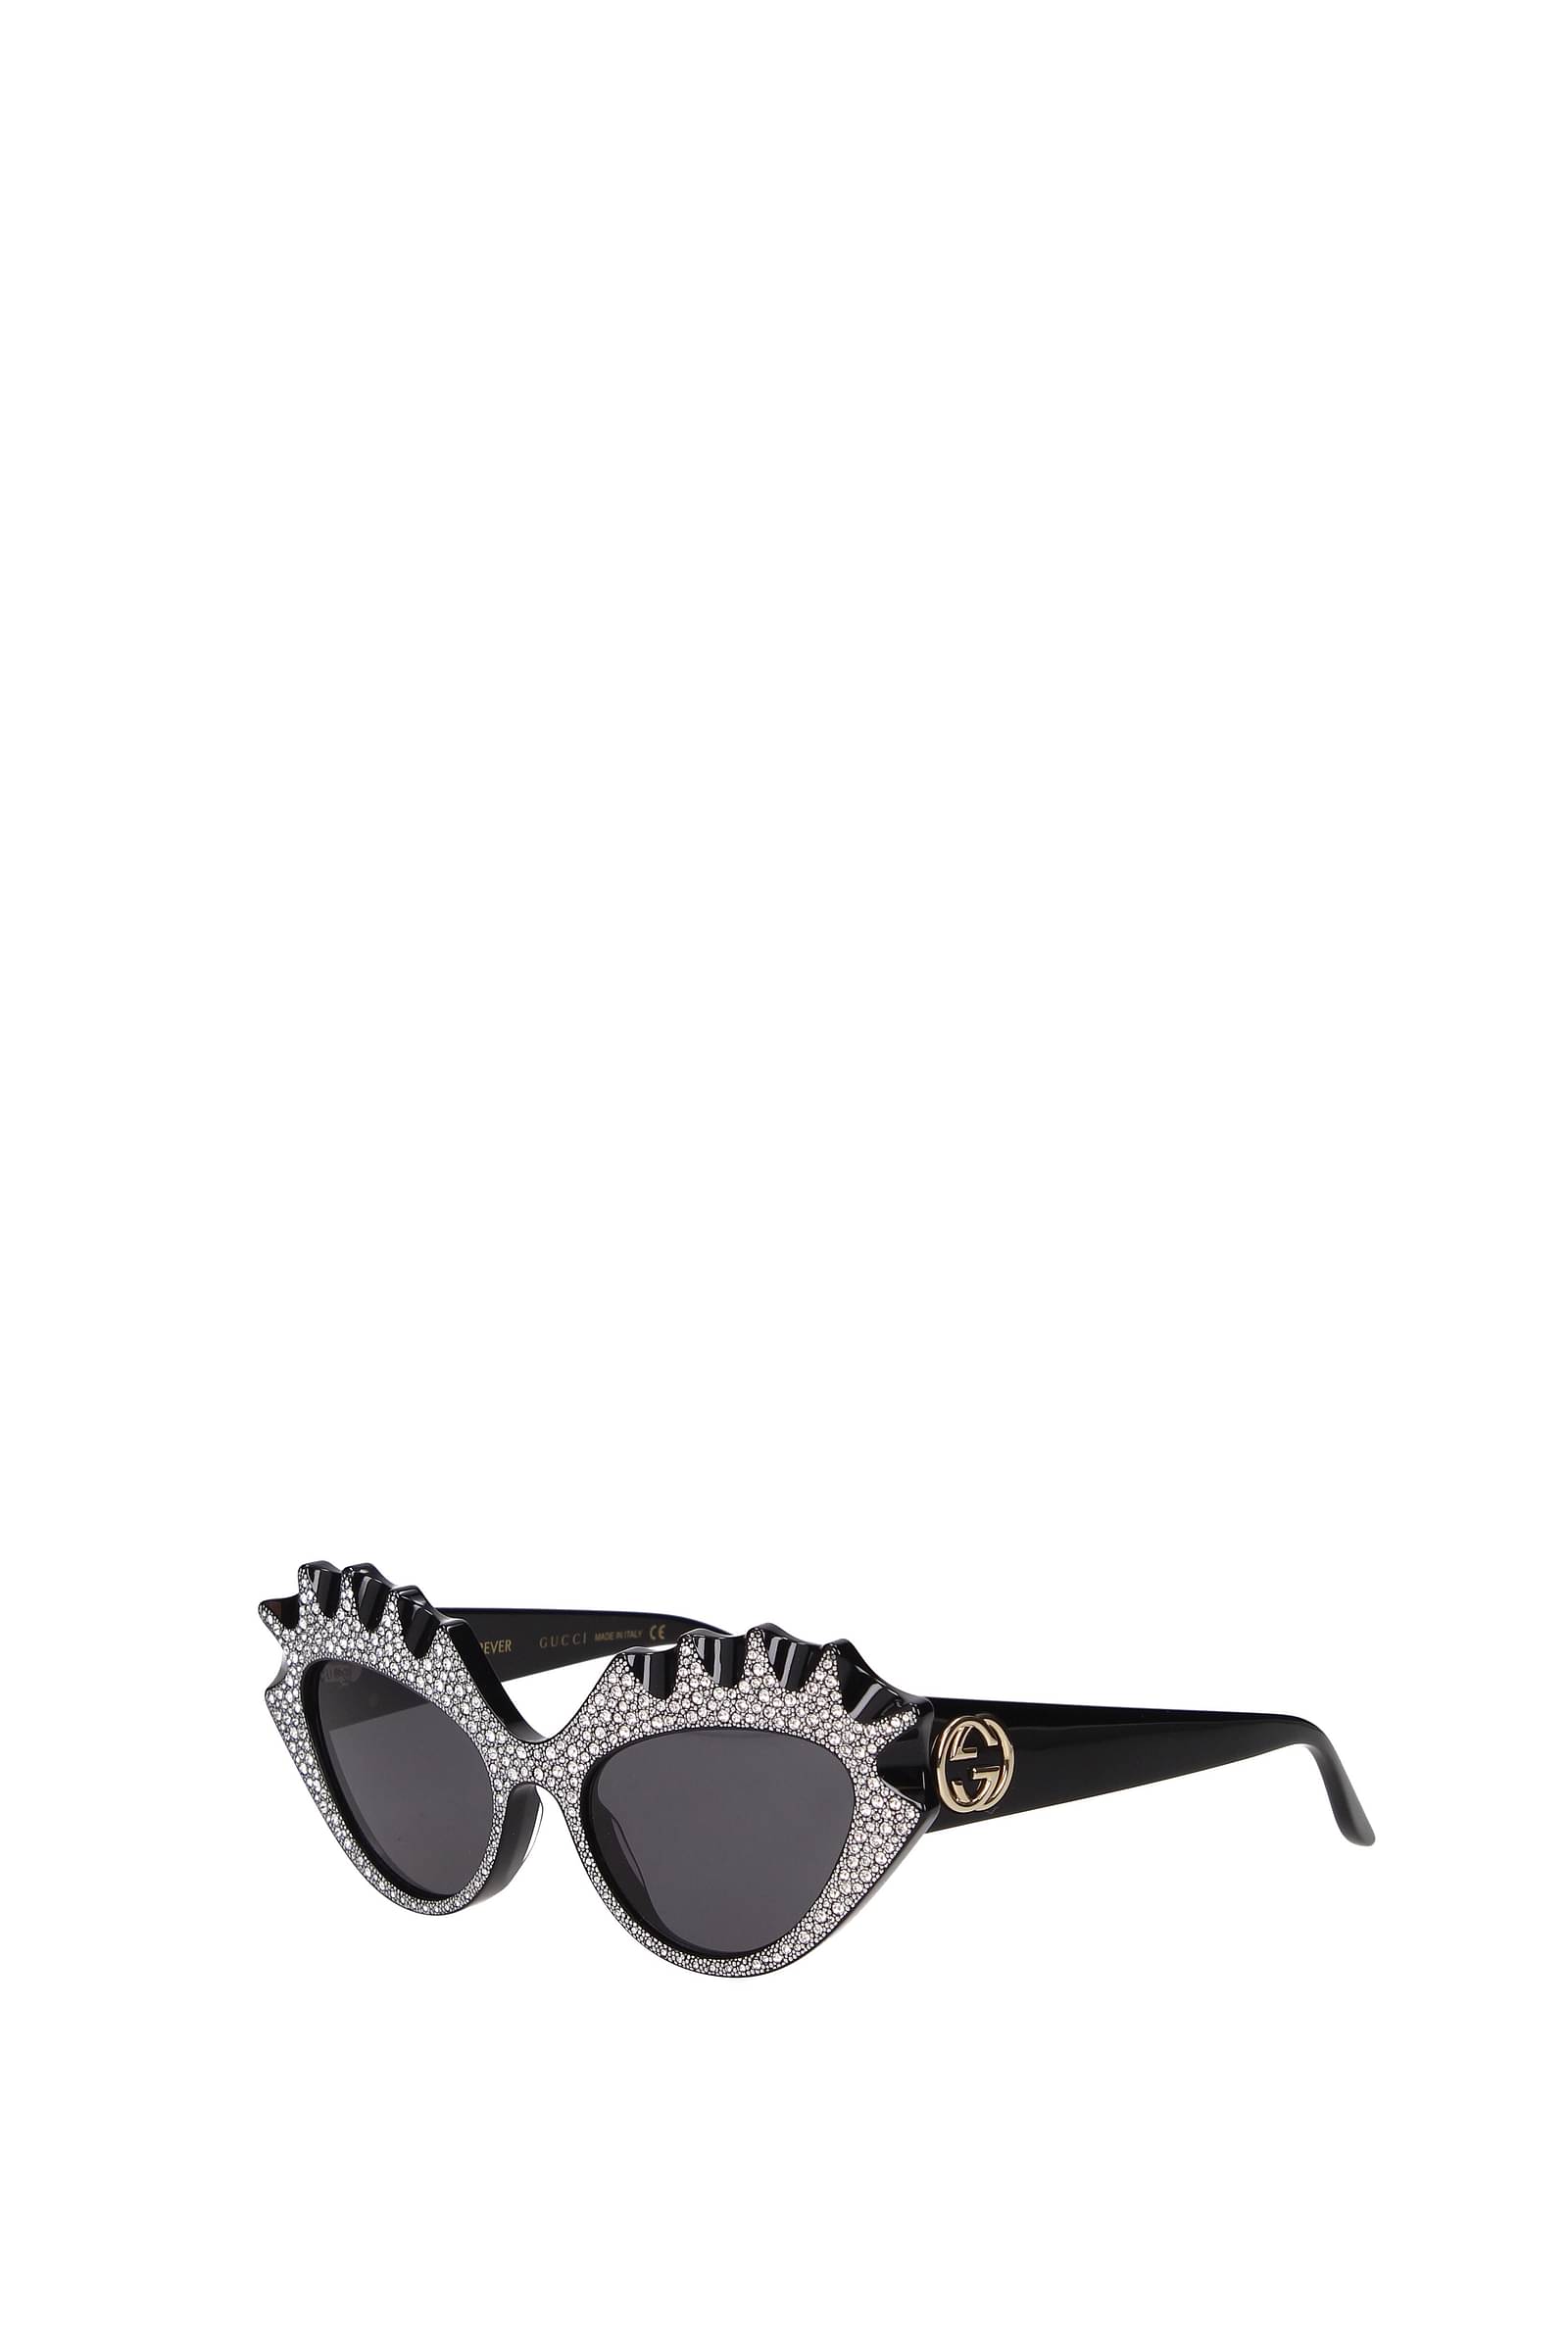 Gucci Sunglasses GG0956S 003 Black Gold Grey Square Woman AUTHENTIC | eBay